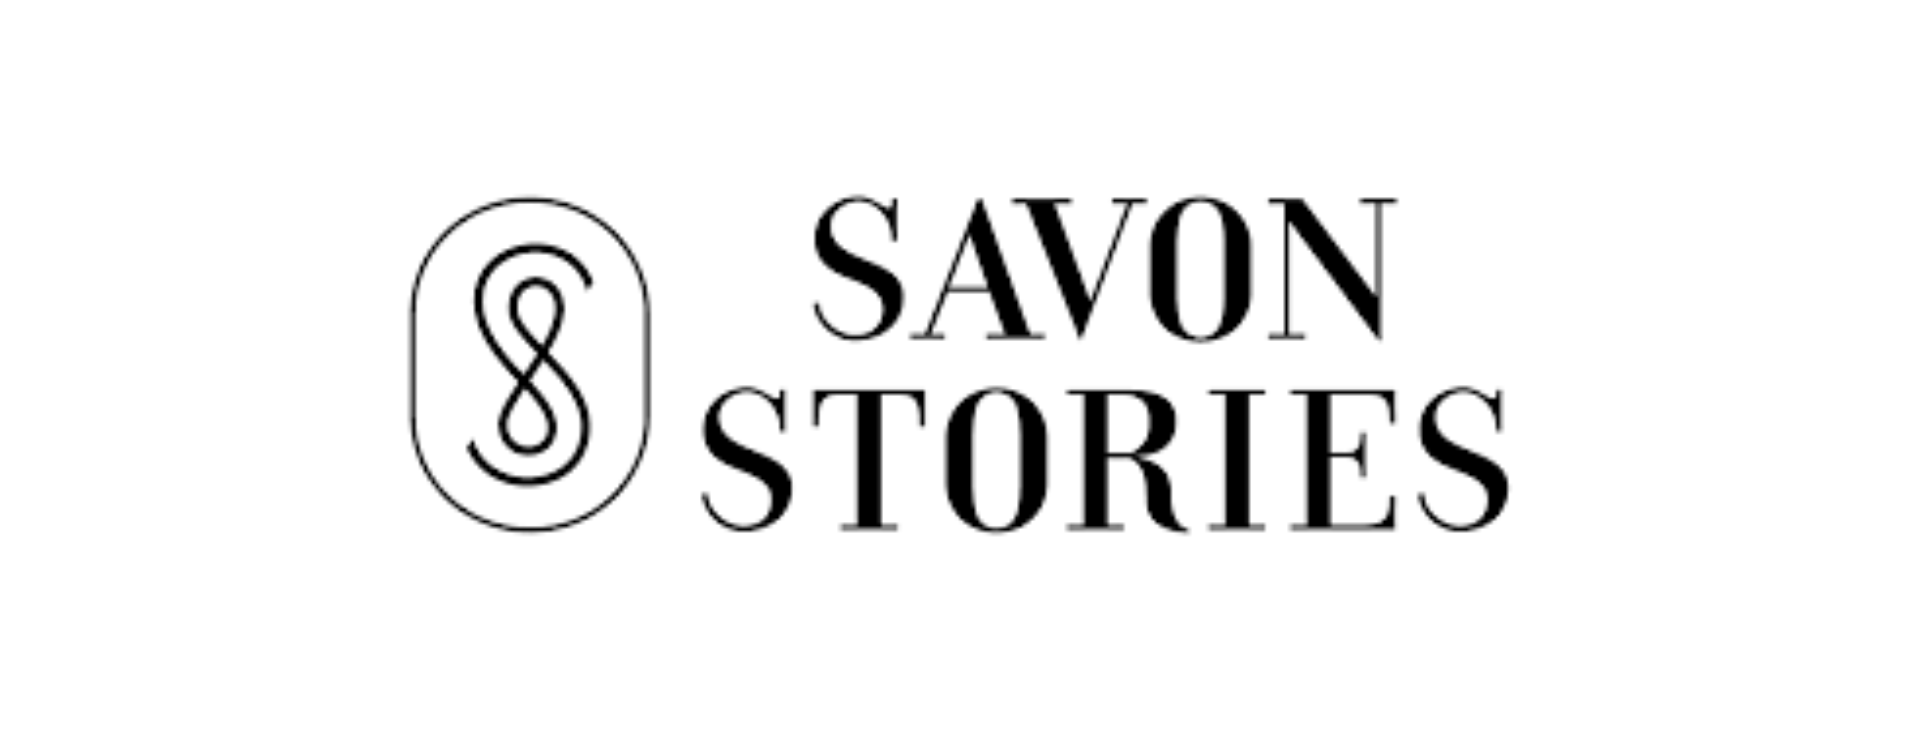 SAVON STORIES